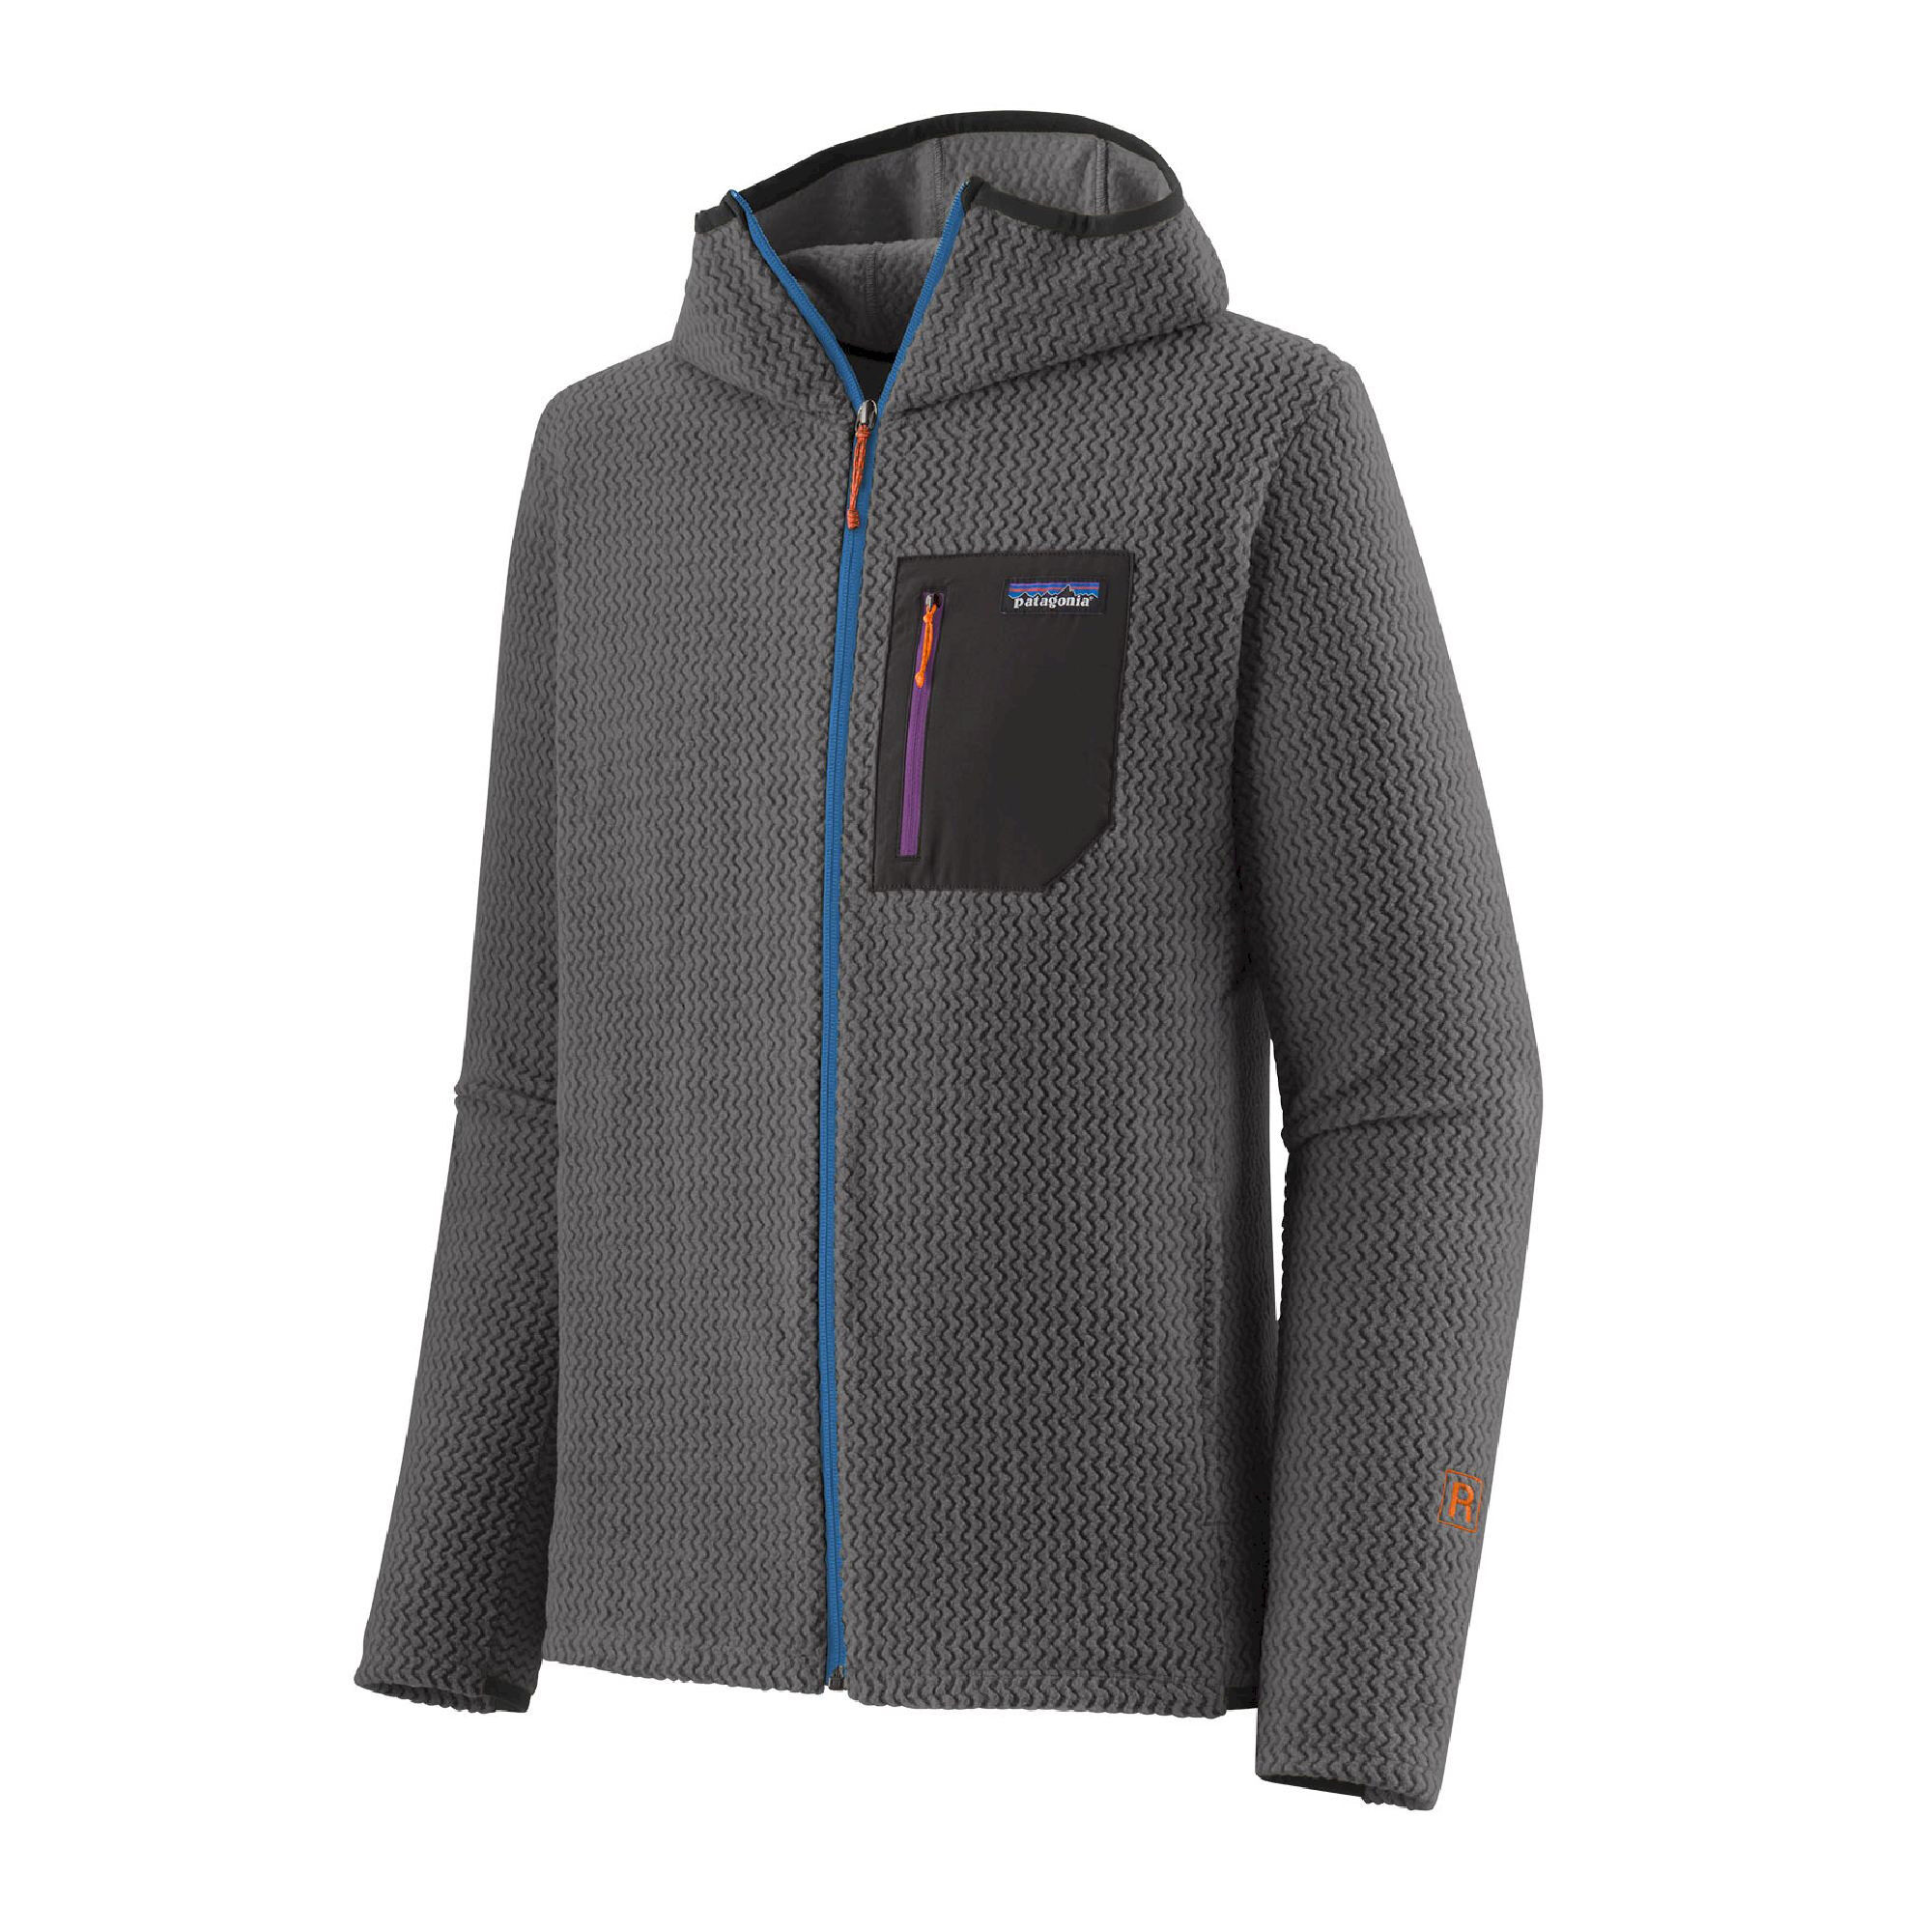 Patagonia R1 Air Full-Zip Hoody - Fleece jacket - Men's